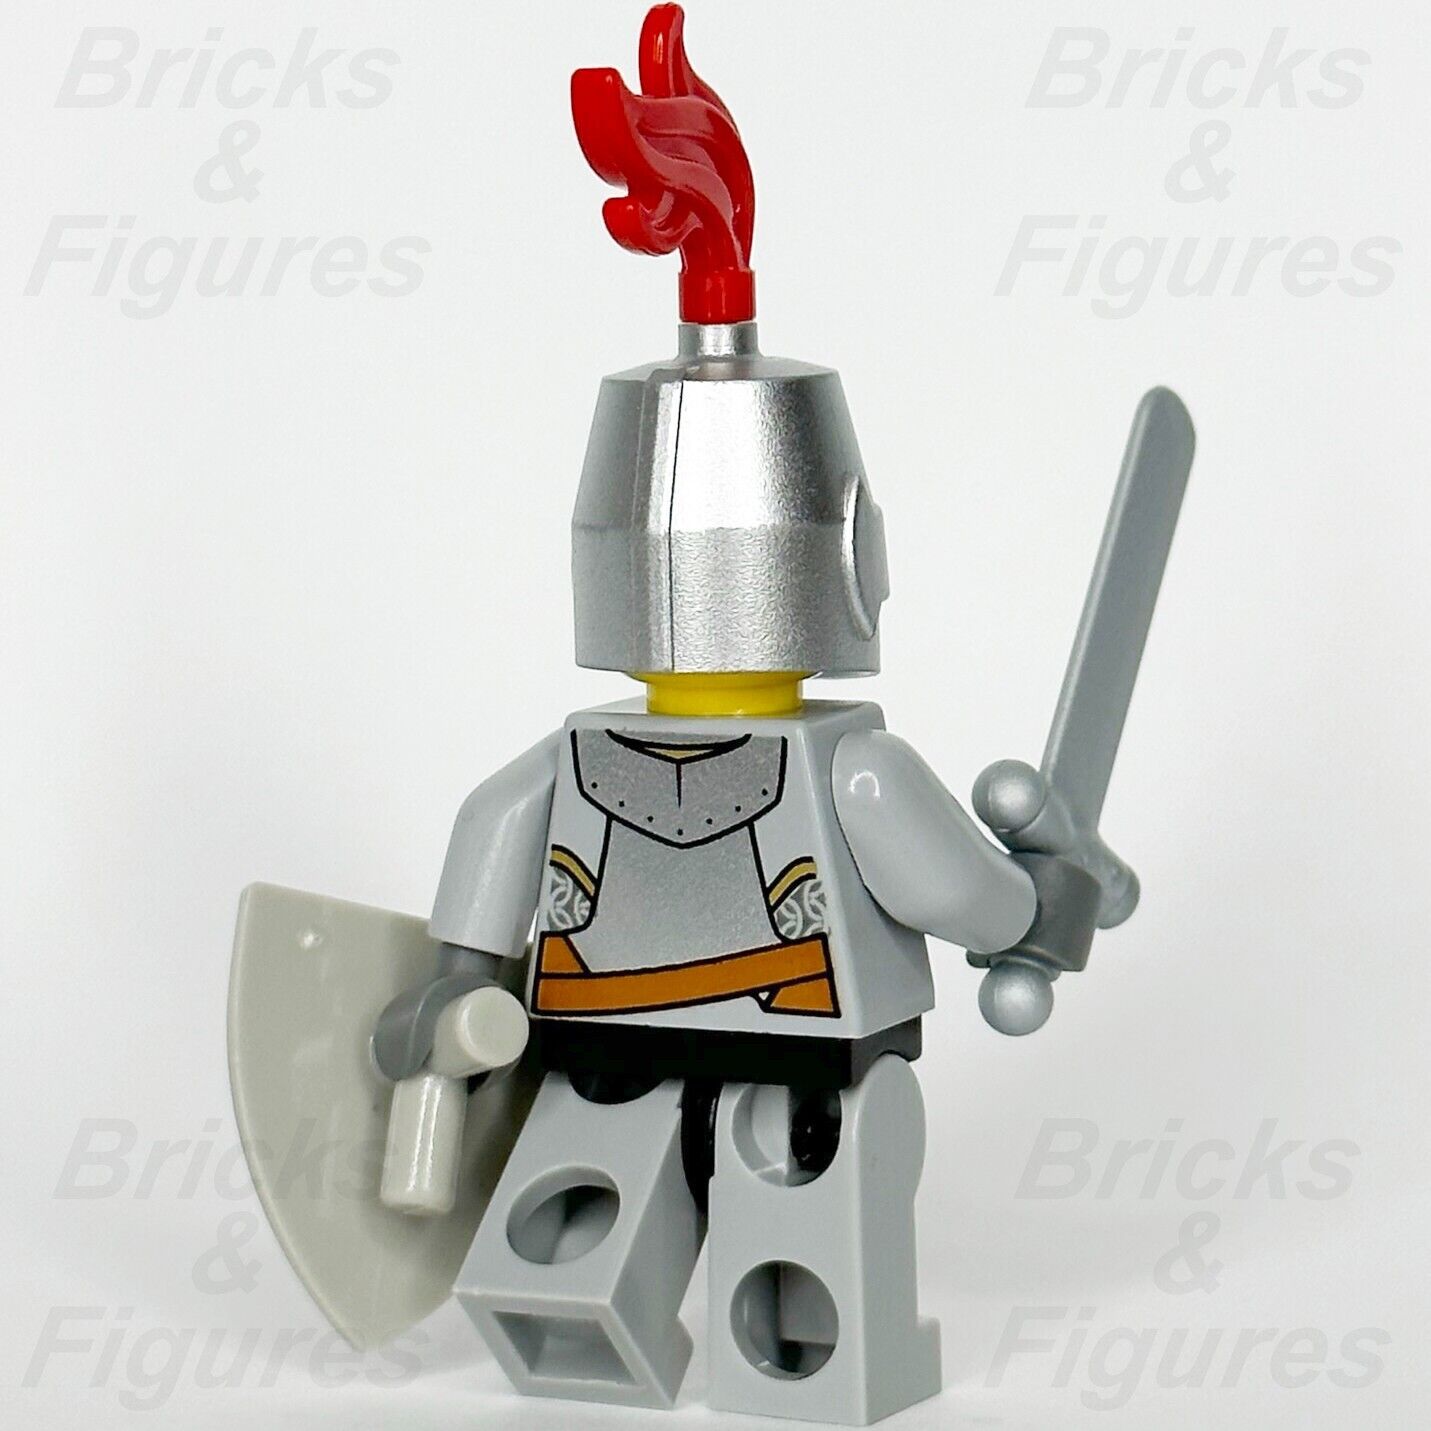 レゴ キャッスル ライオン ナイト ミニフィギュア キングダムズ 剣と盾付き 7949 cas440